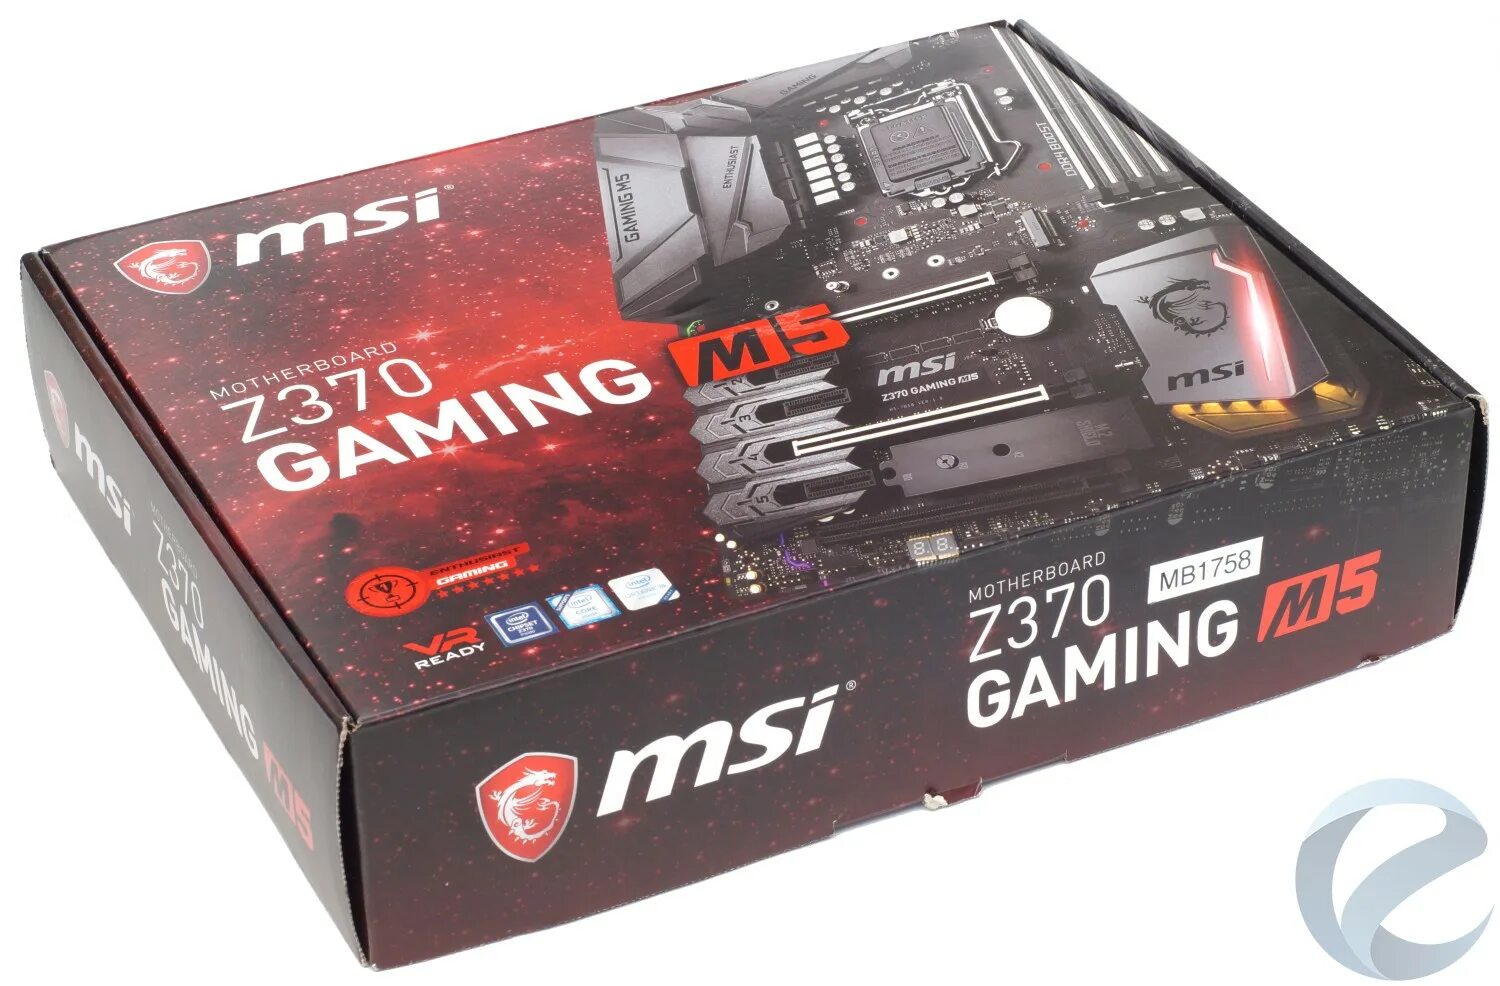 Msi gaming m5. MSI z370 Gaming m5. MSI z370 Gaming m5 4xddr4. MSI z370 Gaming Pro. MSI z370 Gaming Plus.